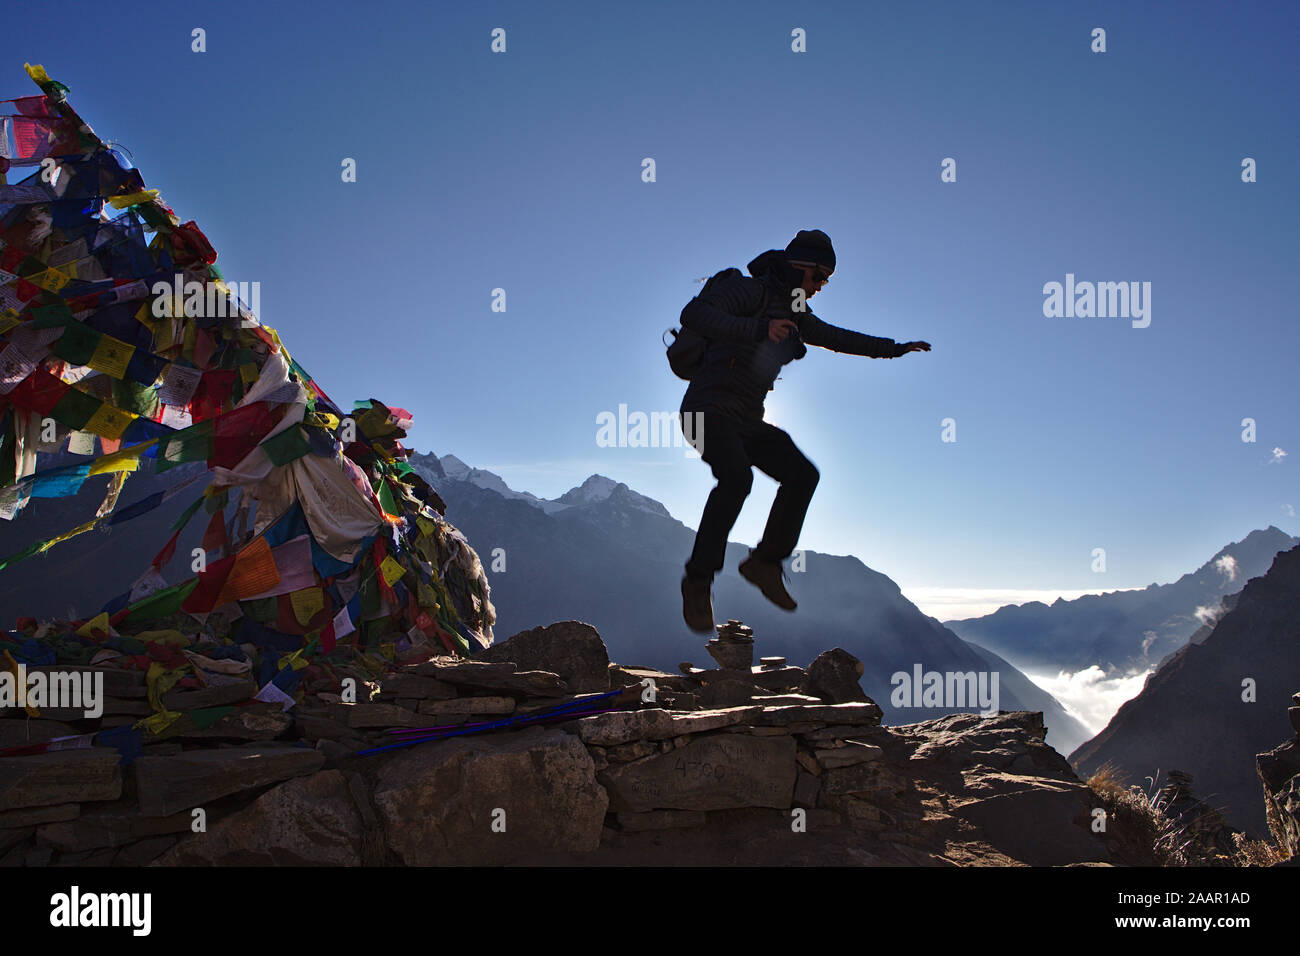 Silhouette of man jumping en haut de Kyanjin Ri avec Langtang valley dans l'arrière-plan Banque D'Images